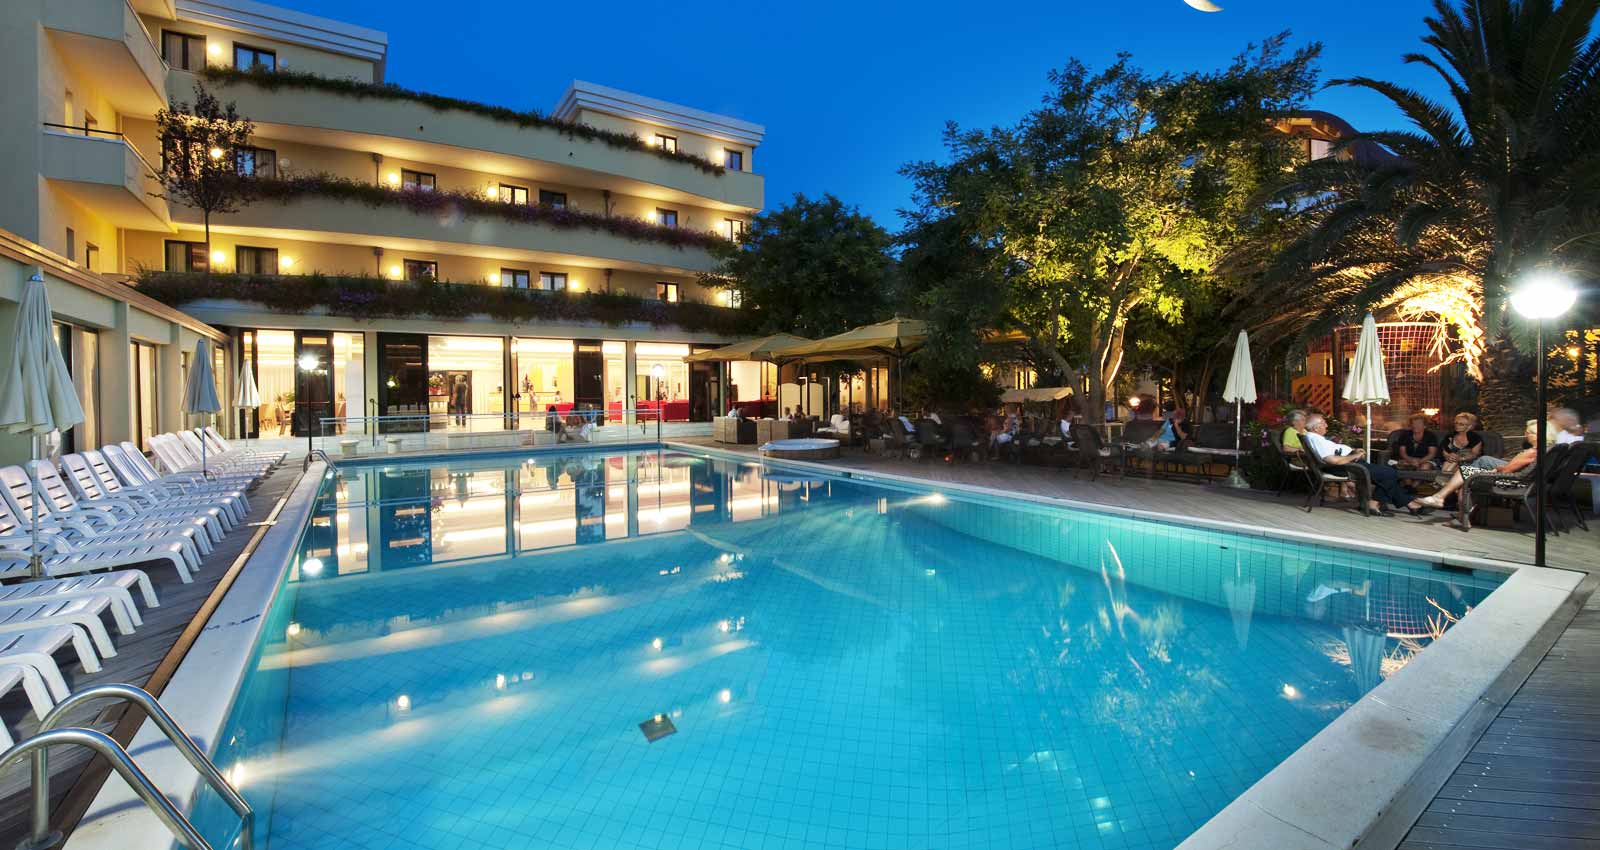 La piscina dell'hotel di sera